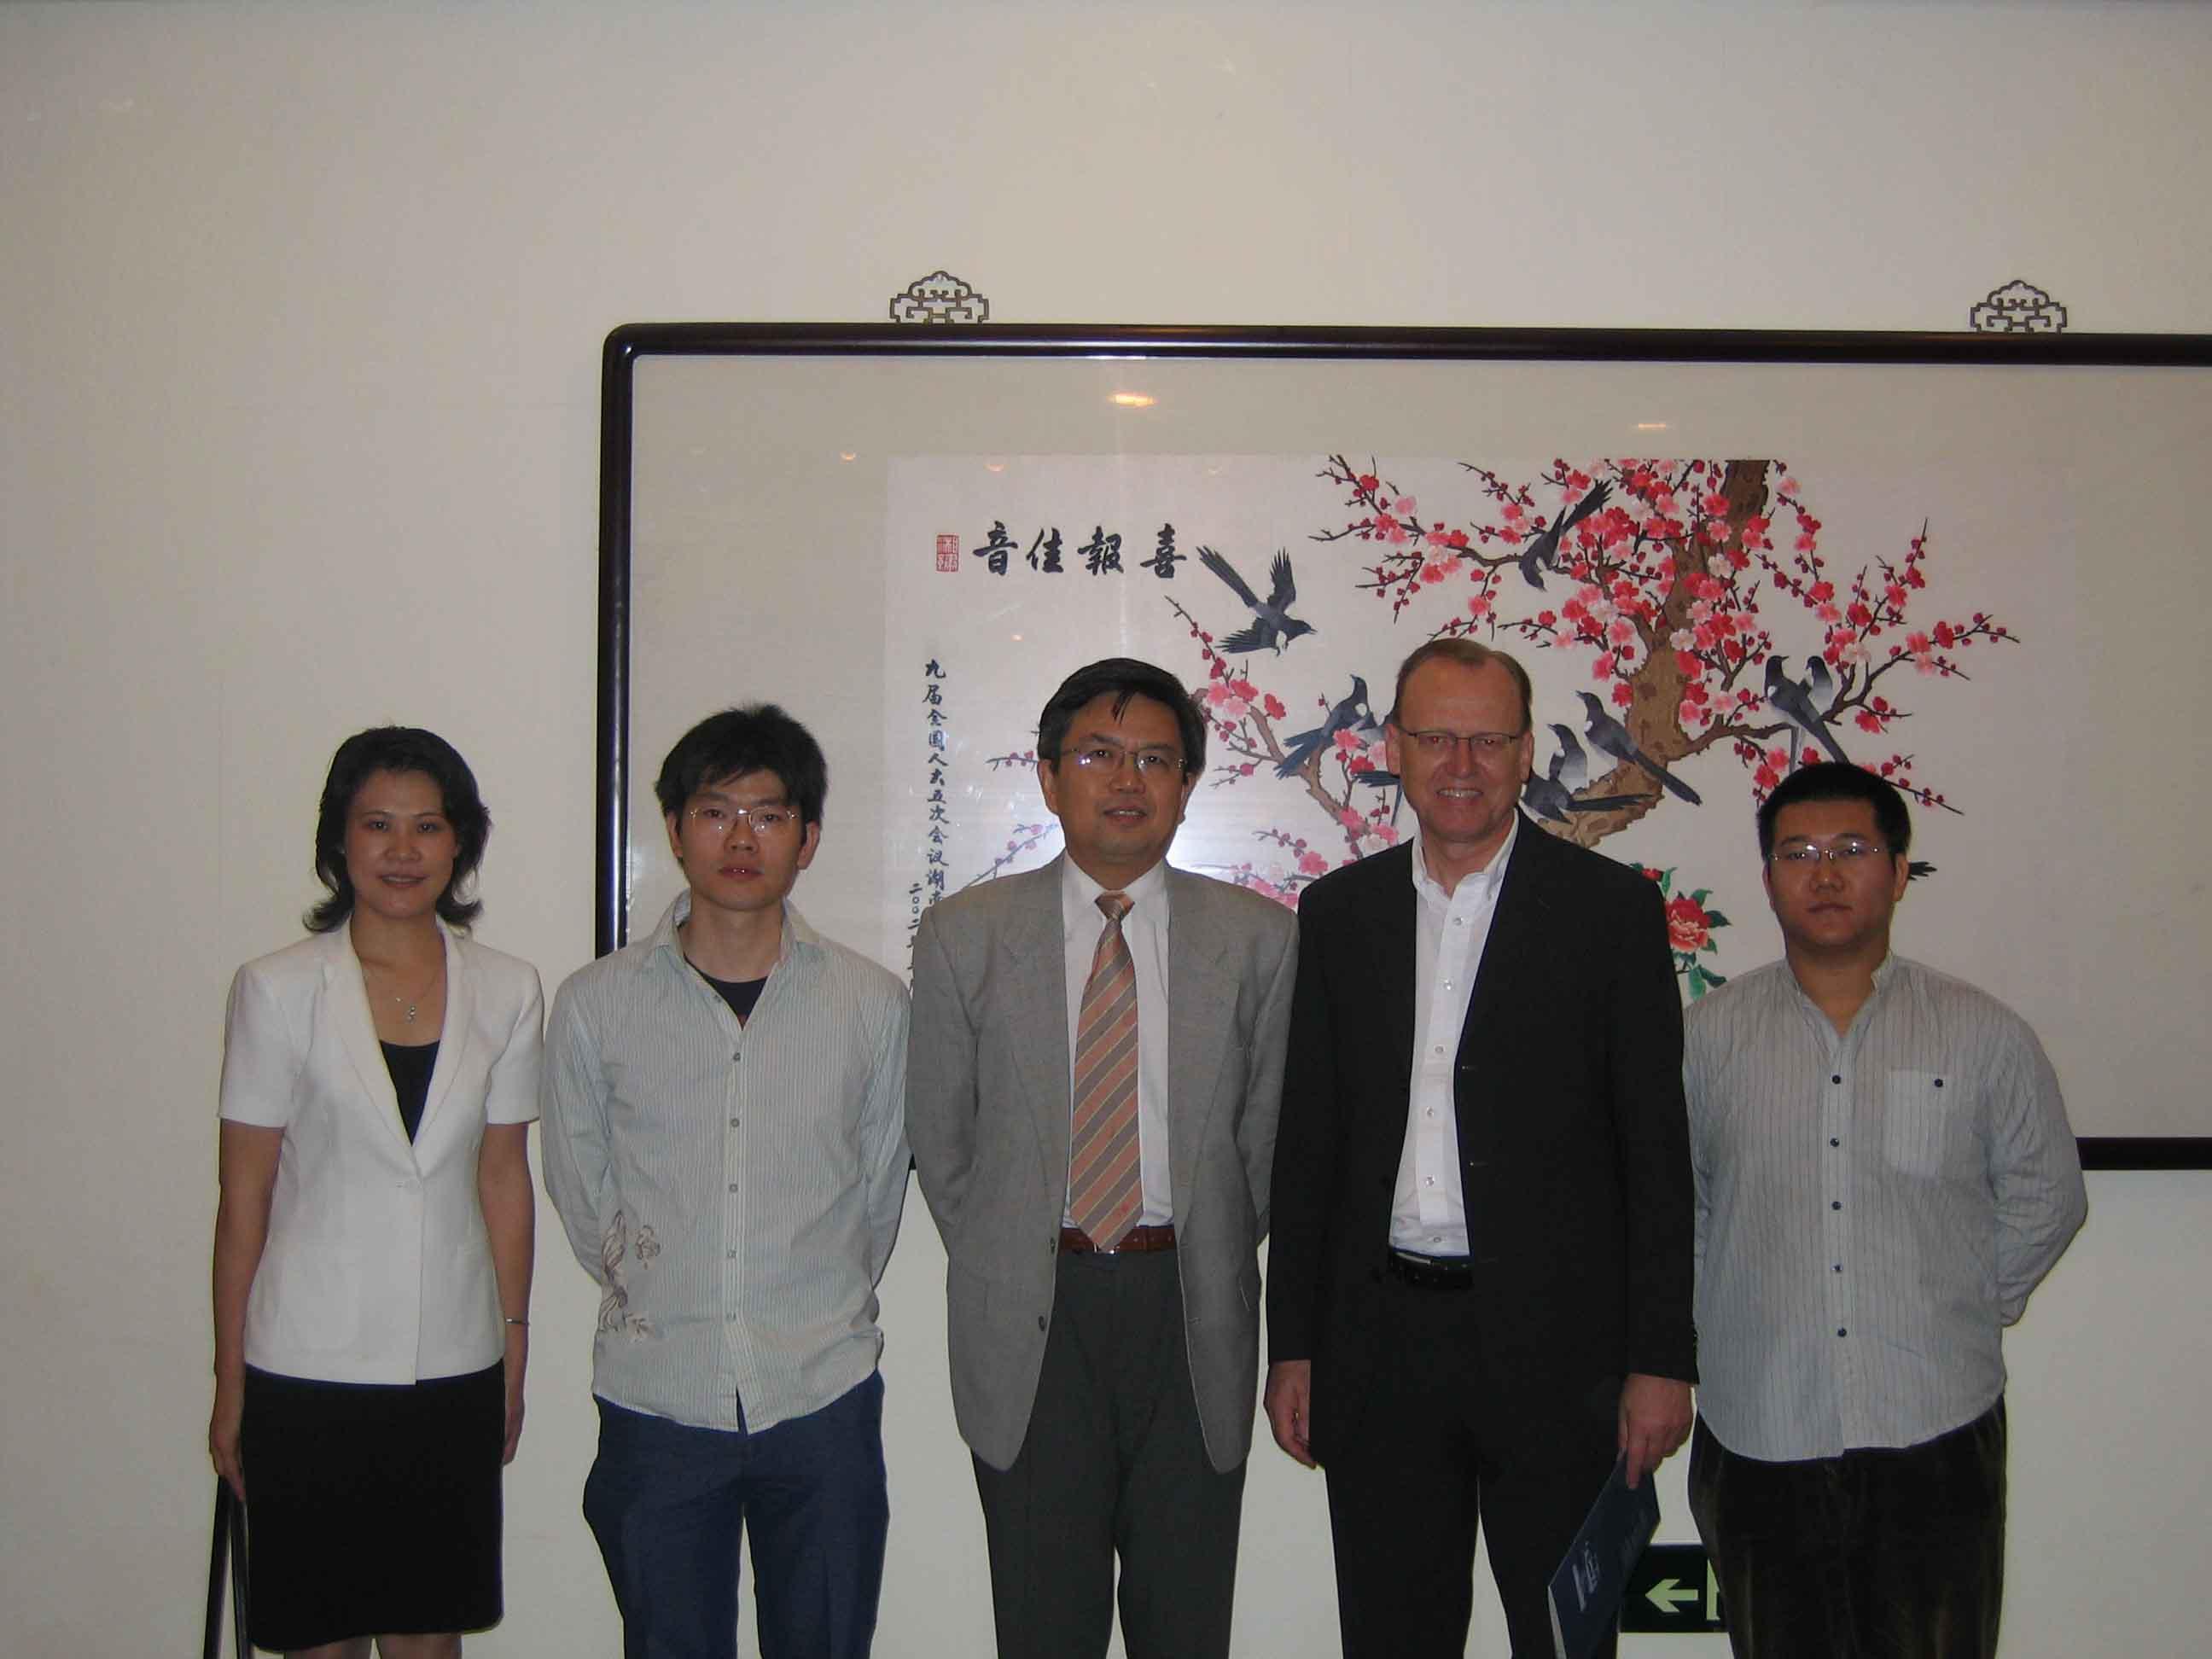 President Gong Met World-renowned Nano-Scientist Professor Flemming Basenbacher